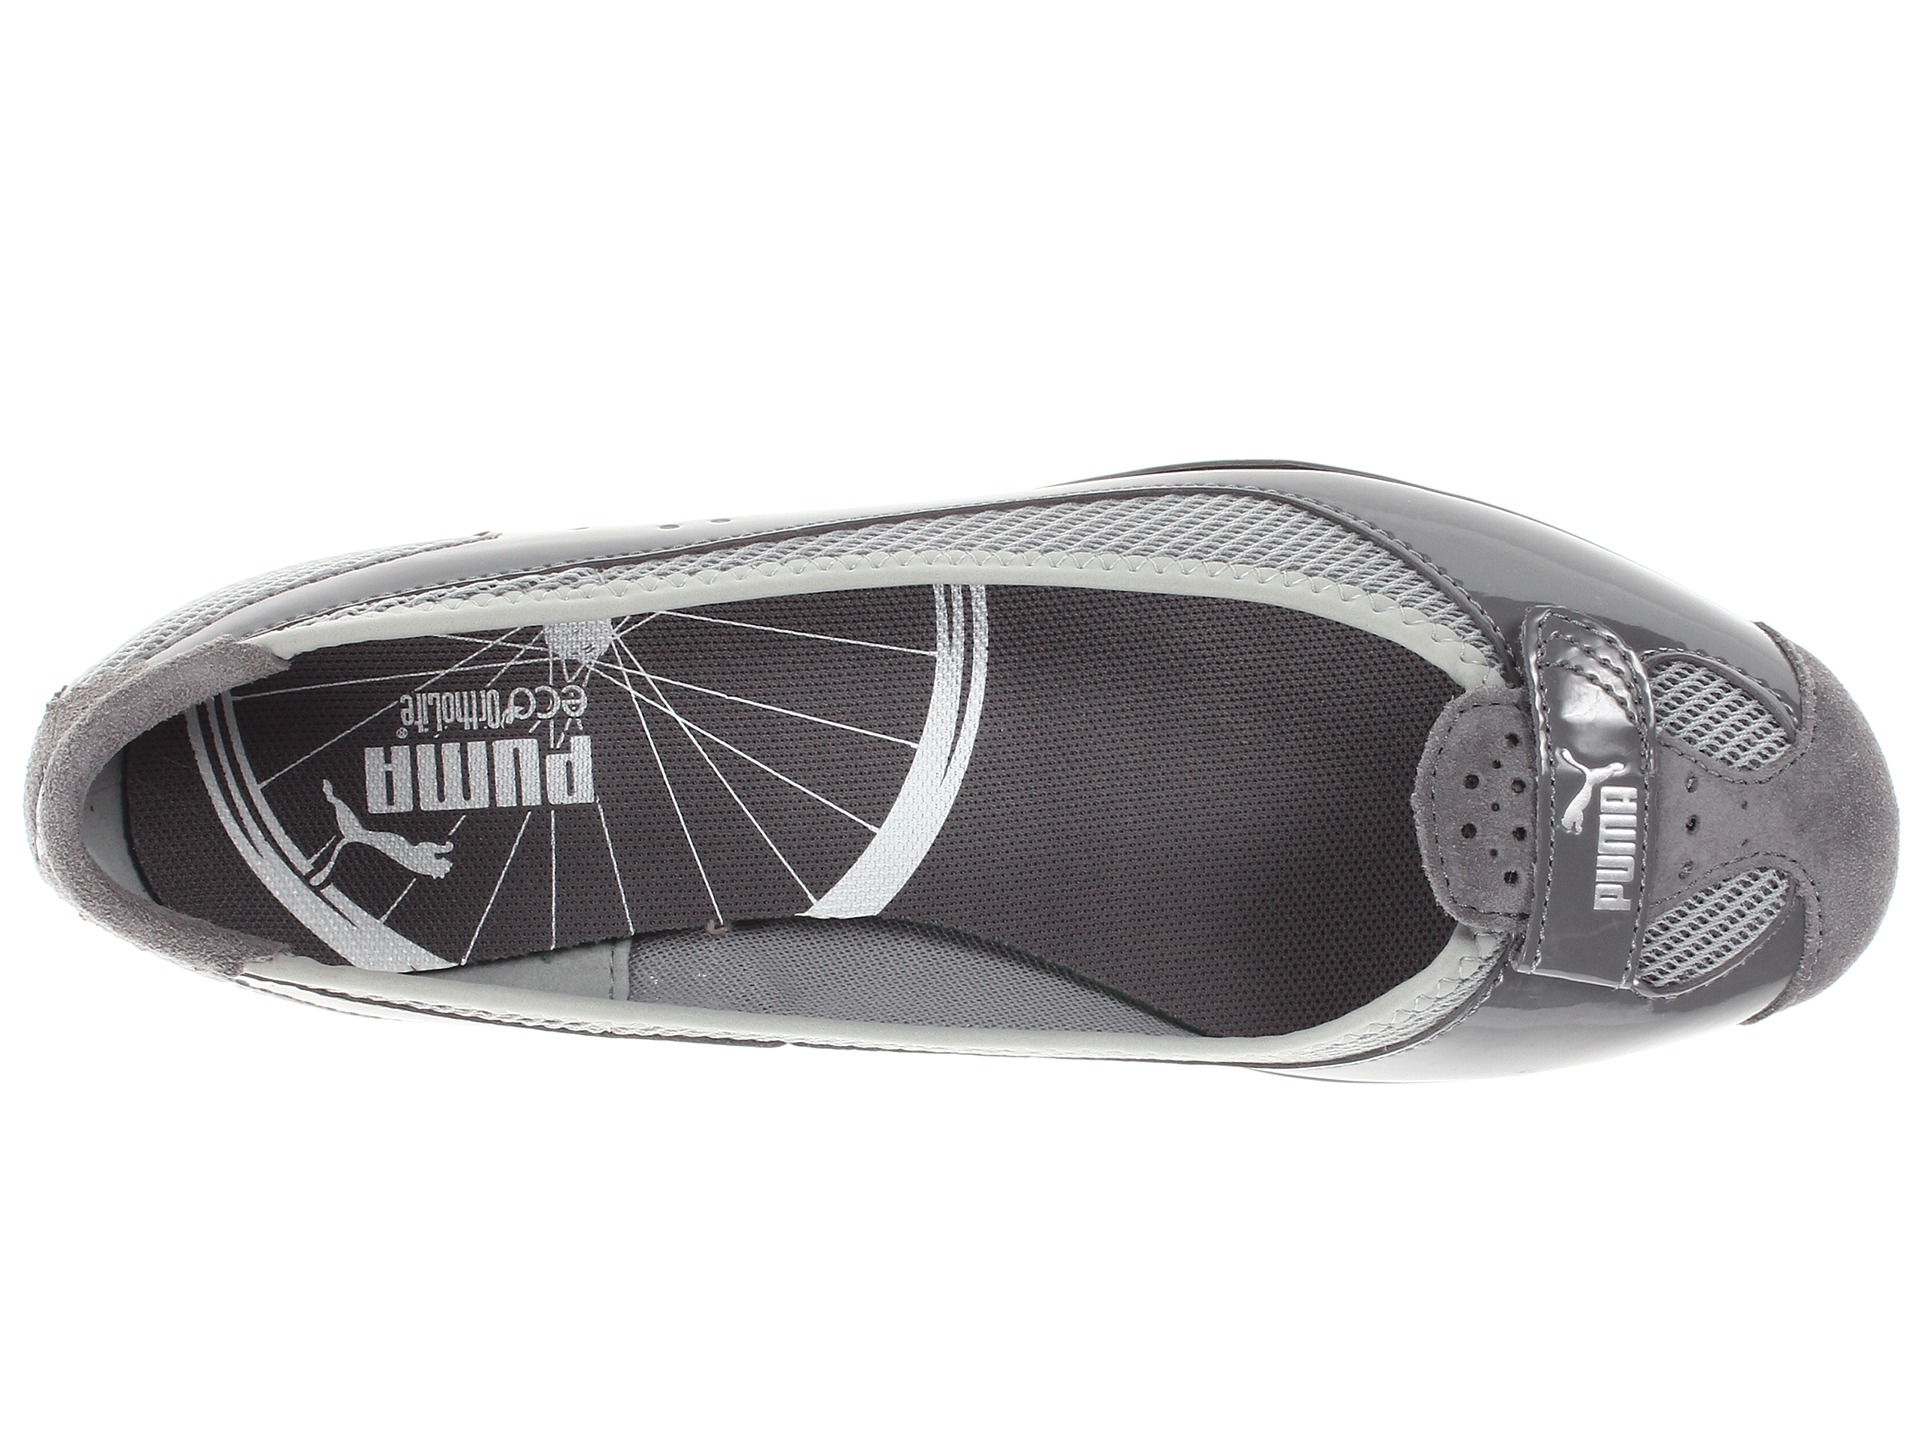 puma women's zandy patent shoe